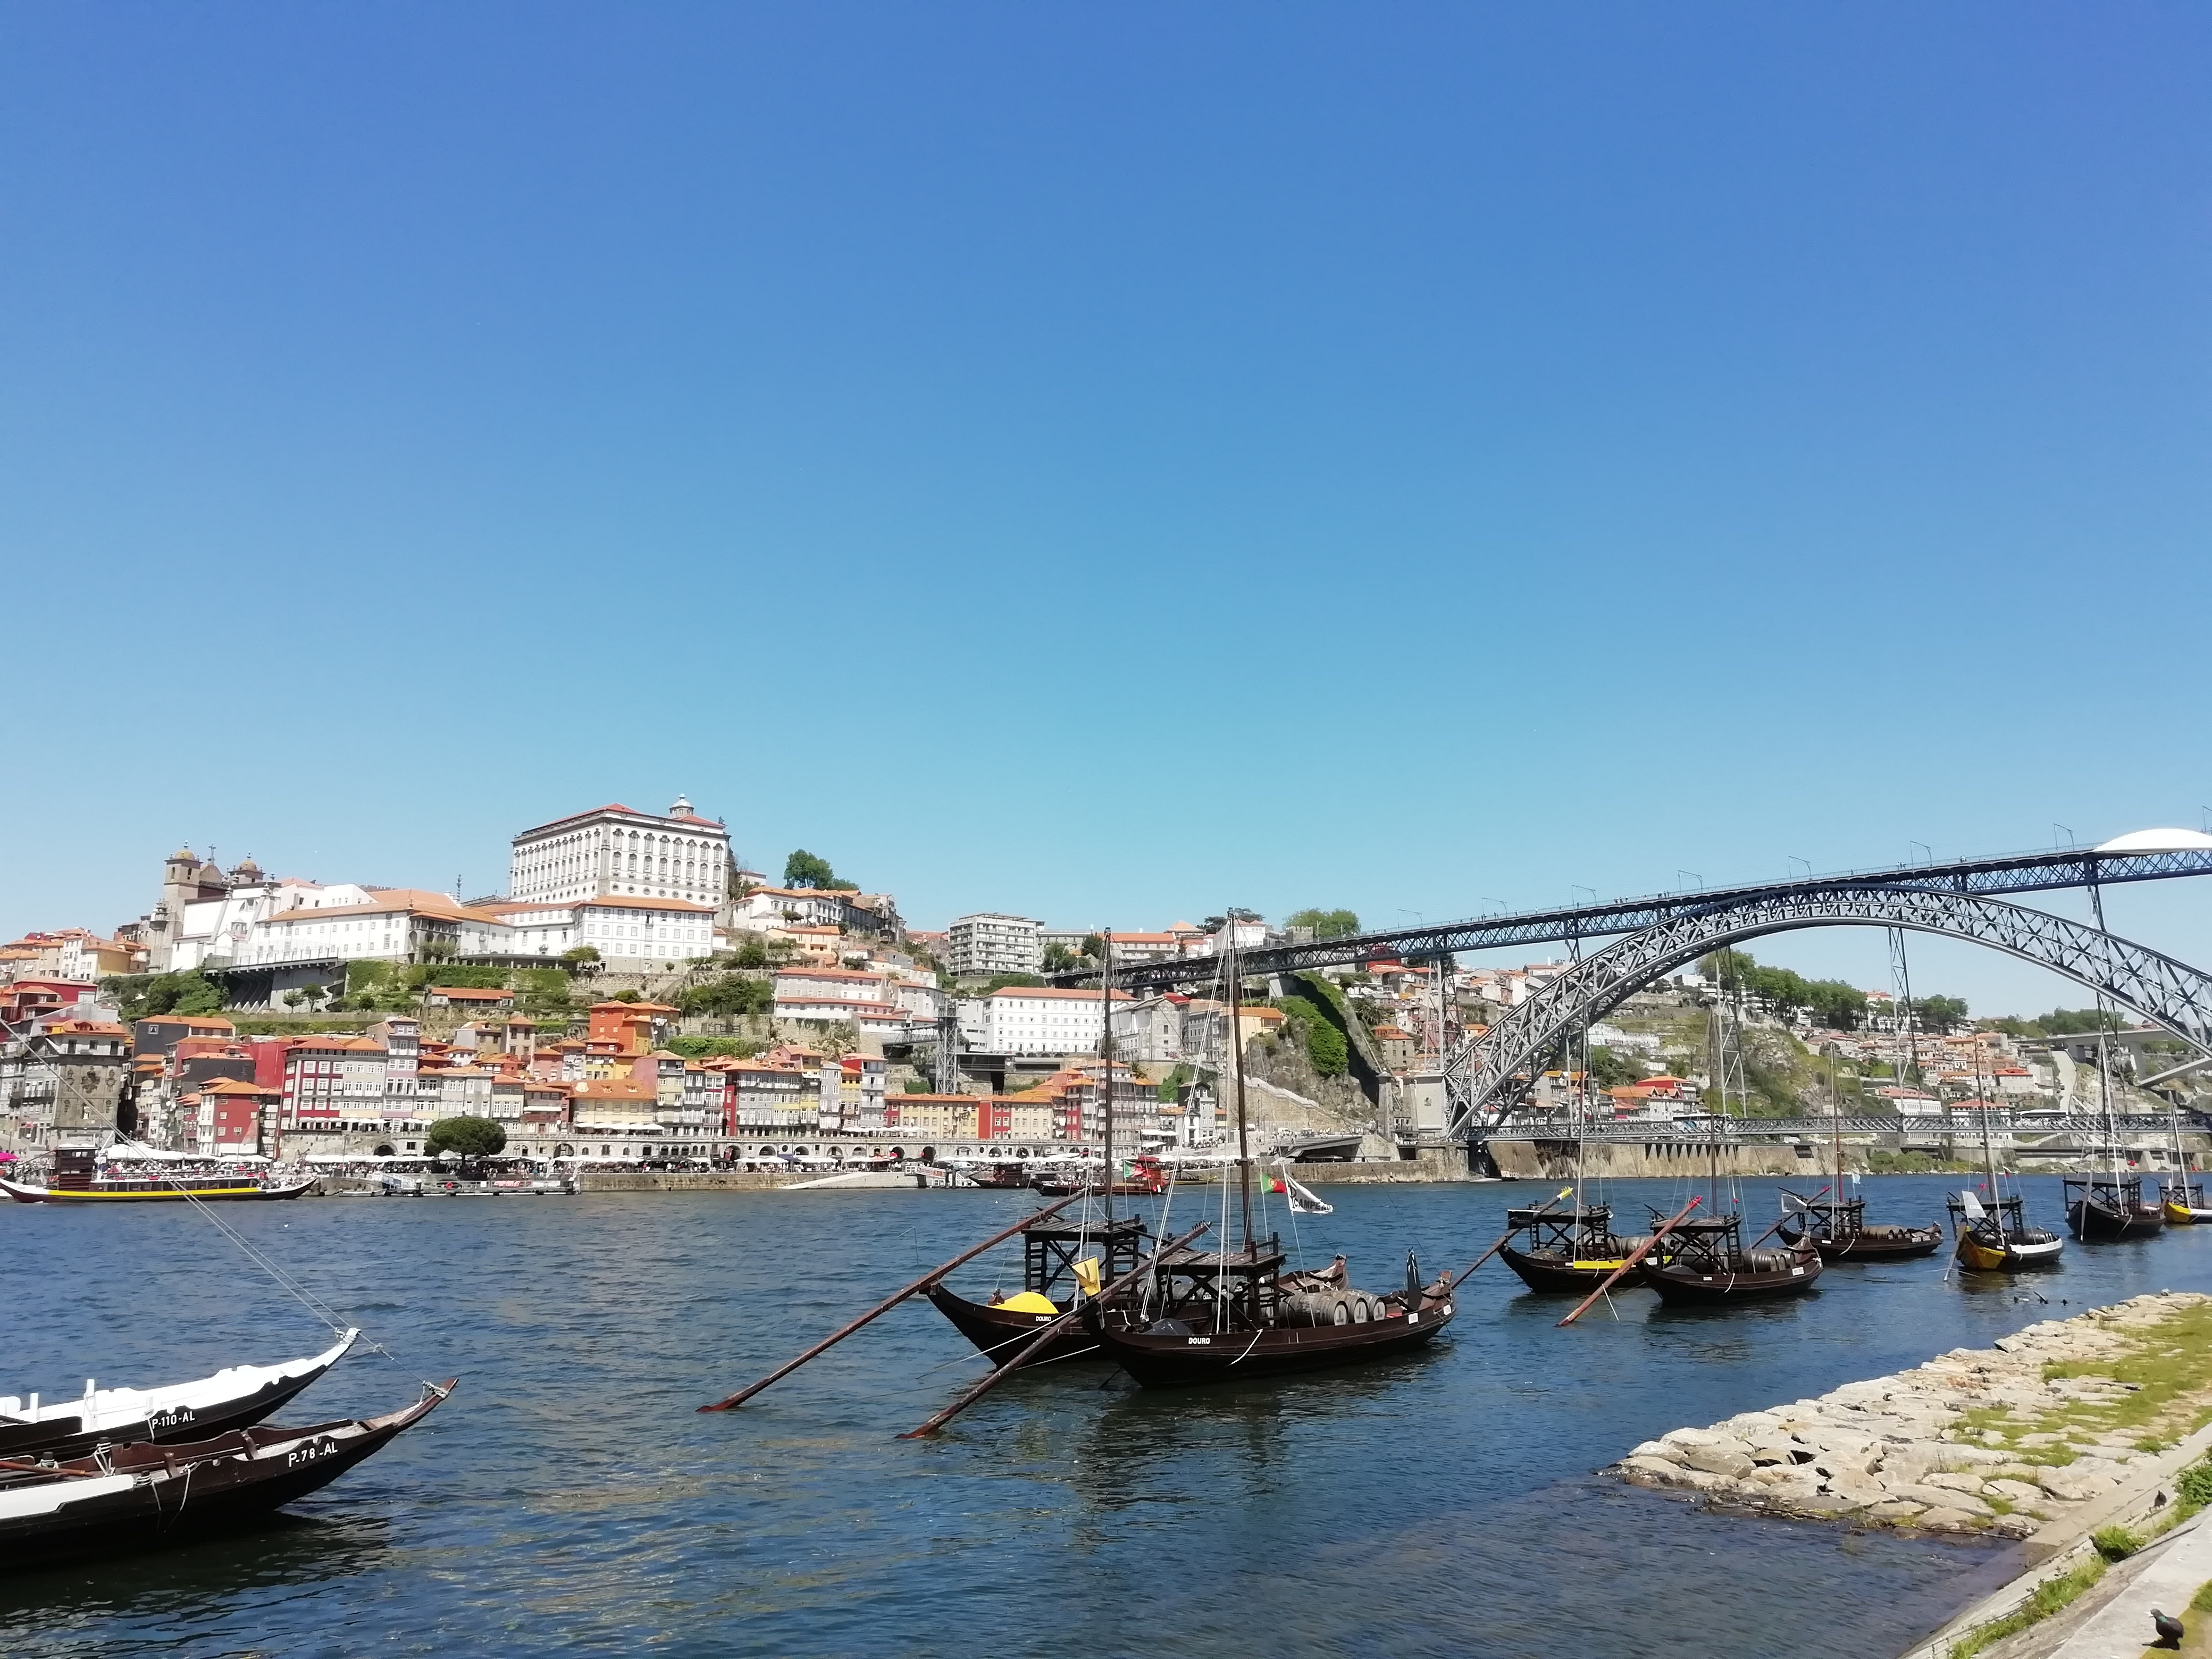 old boat on river Douro in Porto, Portugal